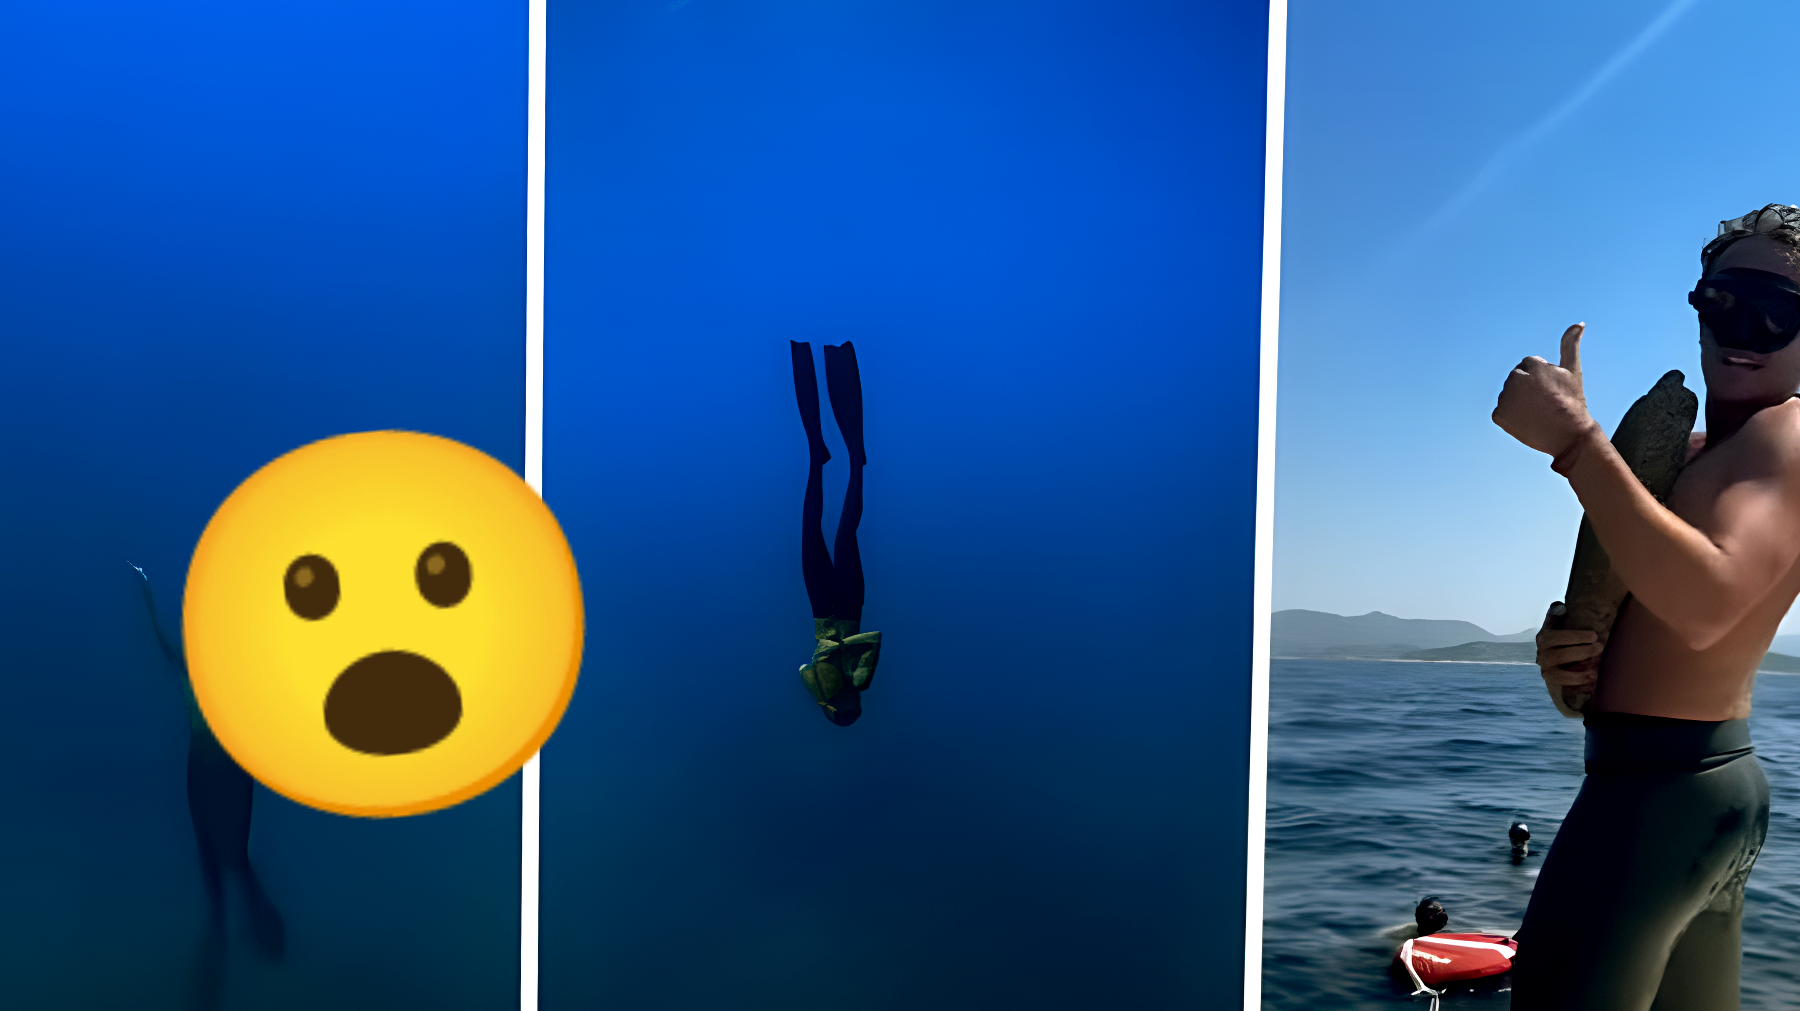 L'esperimento incredibile dell'apneista: si tuffa nel mare abbracciando un sasso, il risultato è stato clamoroso!